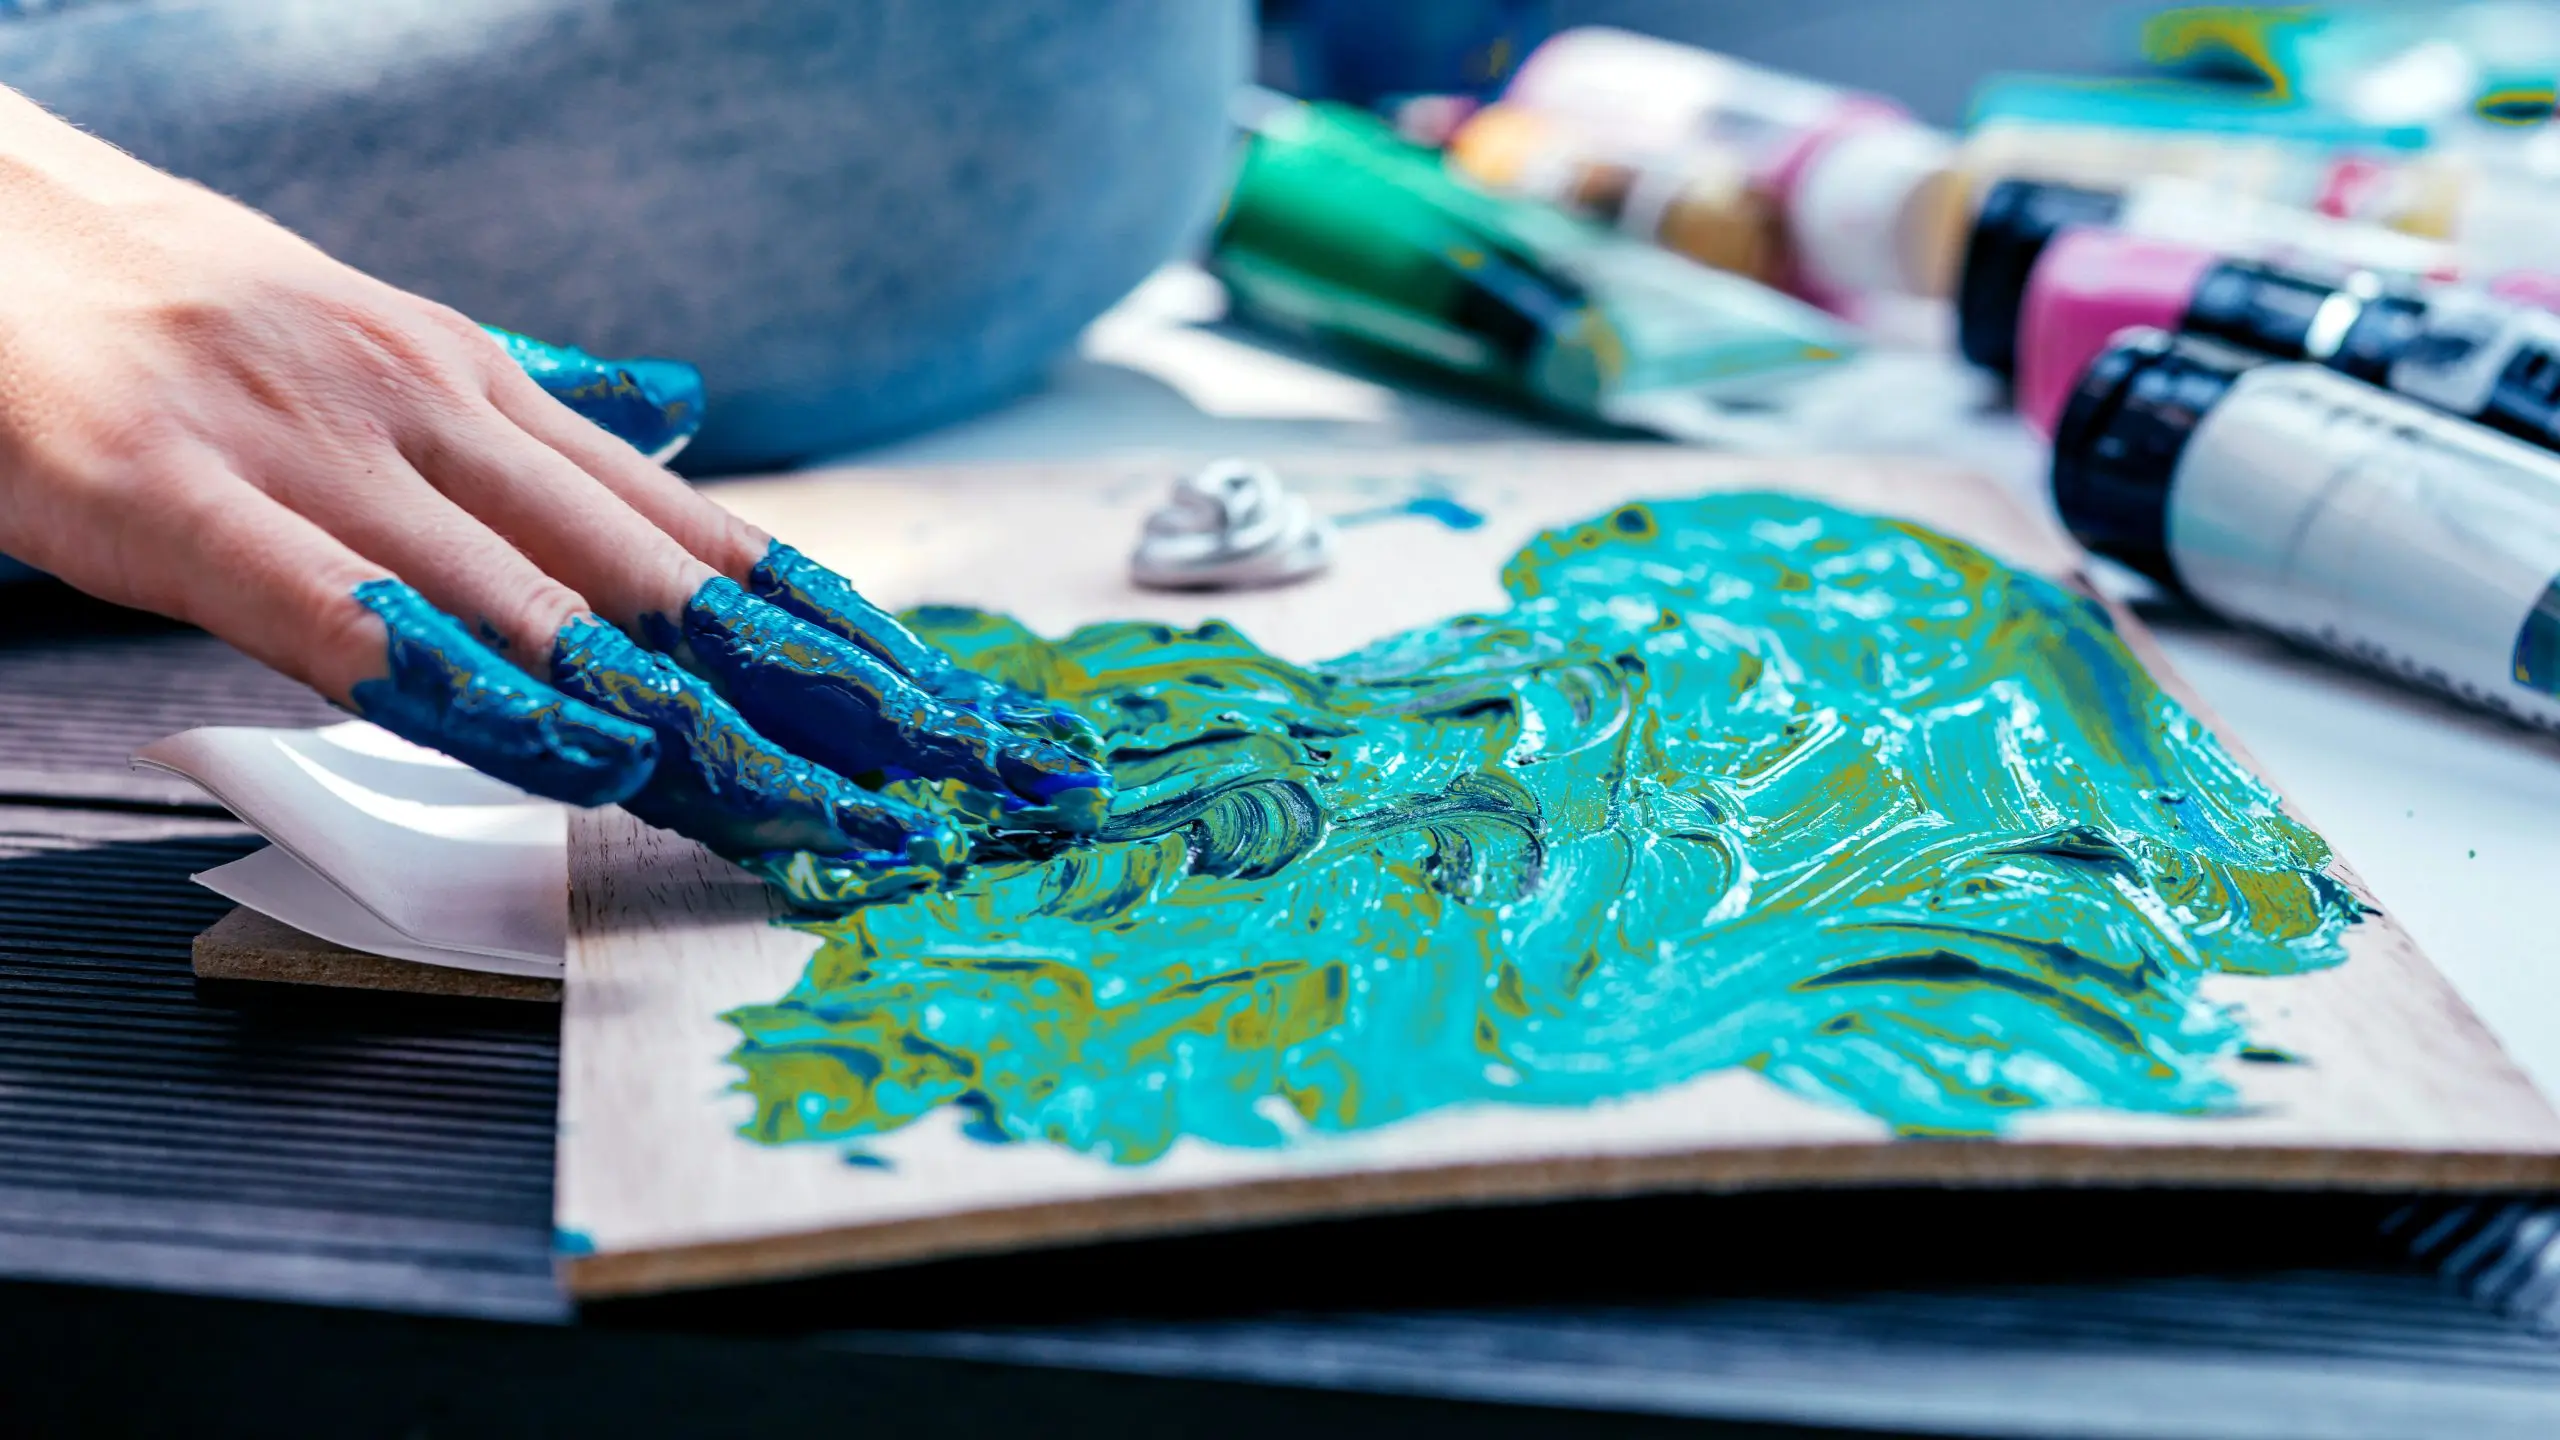 acrilico al agua artistico - Que se puede pintar con pintura al agua